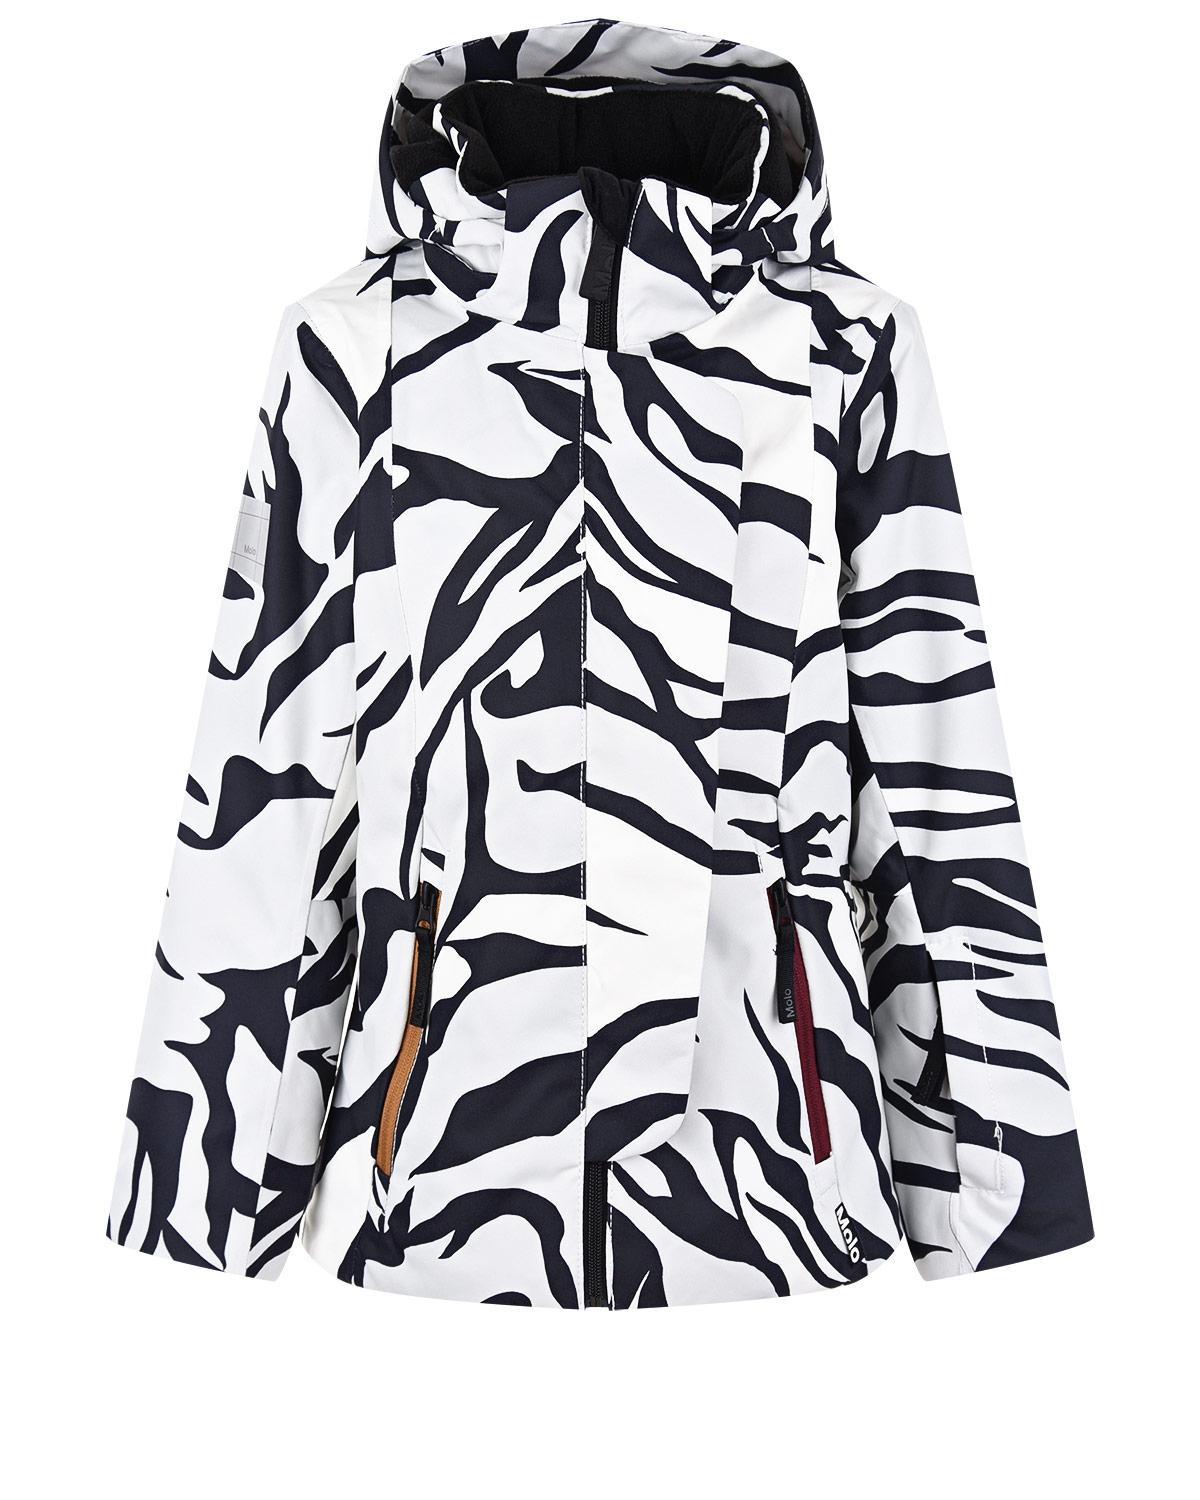 Комплект с принтом "зебра" (куртка, брюки, подтяжки) Molo детский, размер 140, цвет нет цвета Комплект с принтом "зебра" (куртка, брюки, подтяжки) Molo детский - фото 2